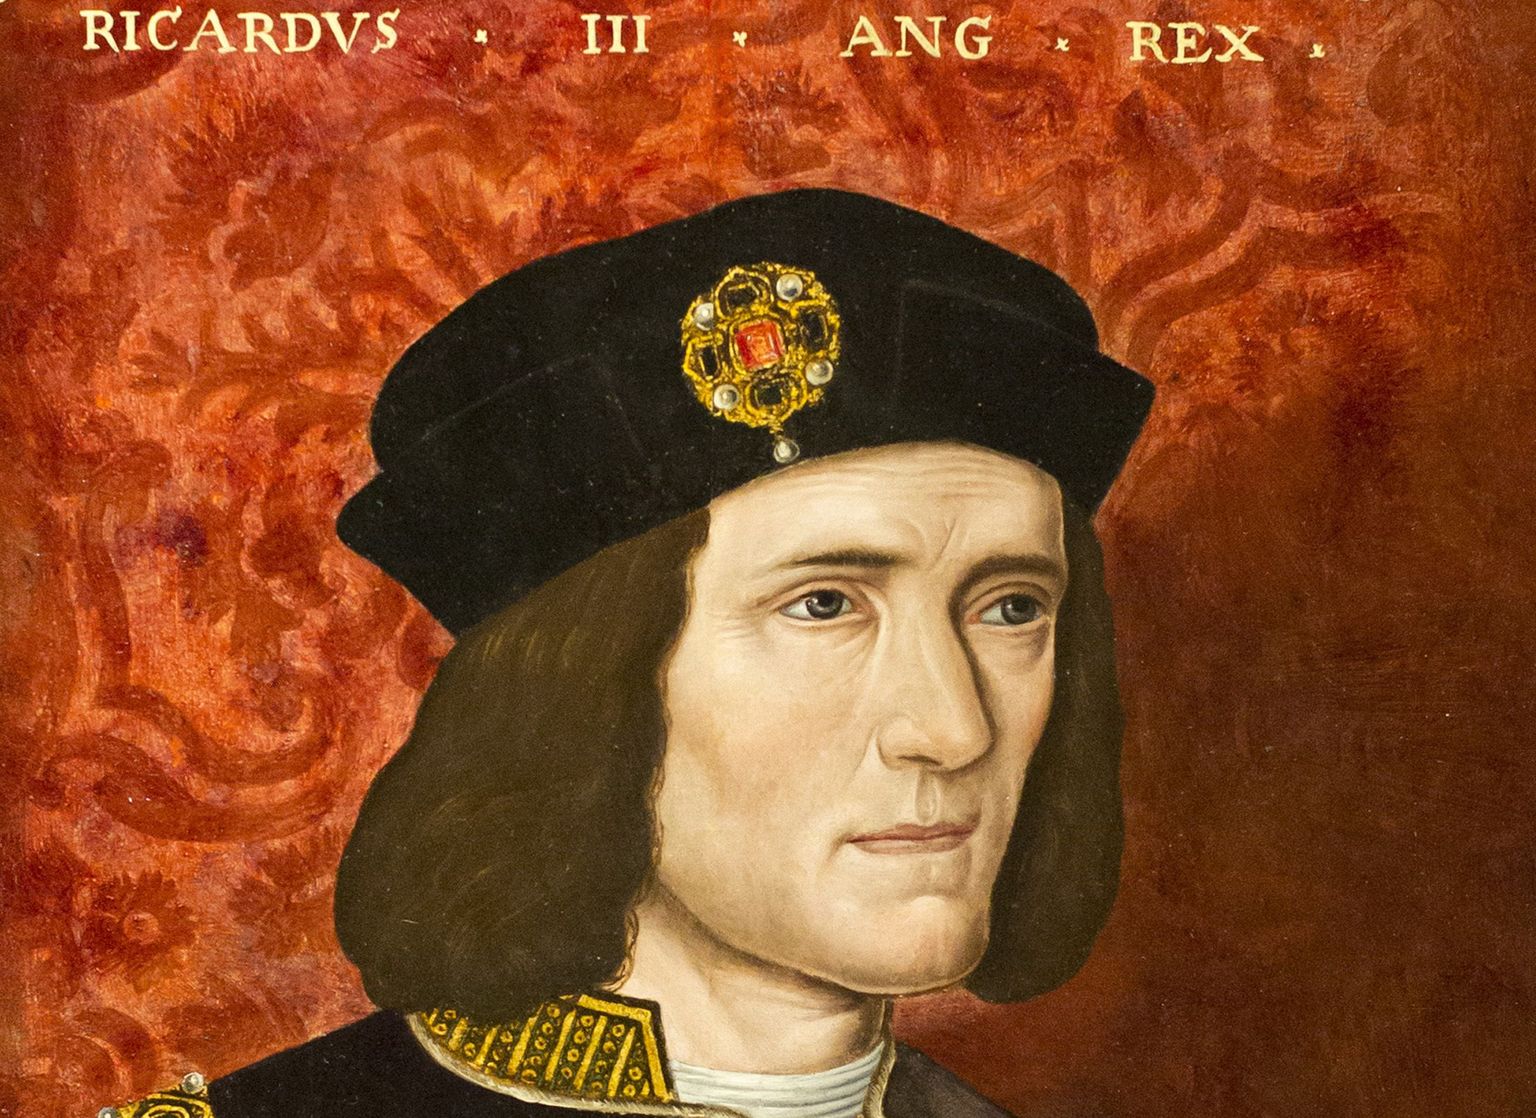 Briti rahvuslikus portreegaleriis olev portreemaal Richard III-dast